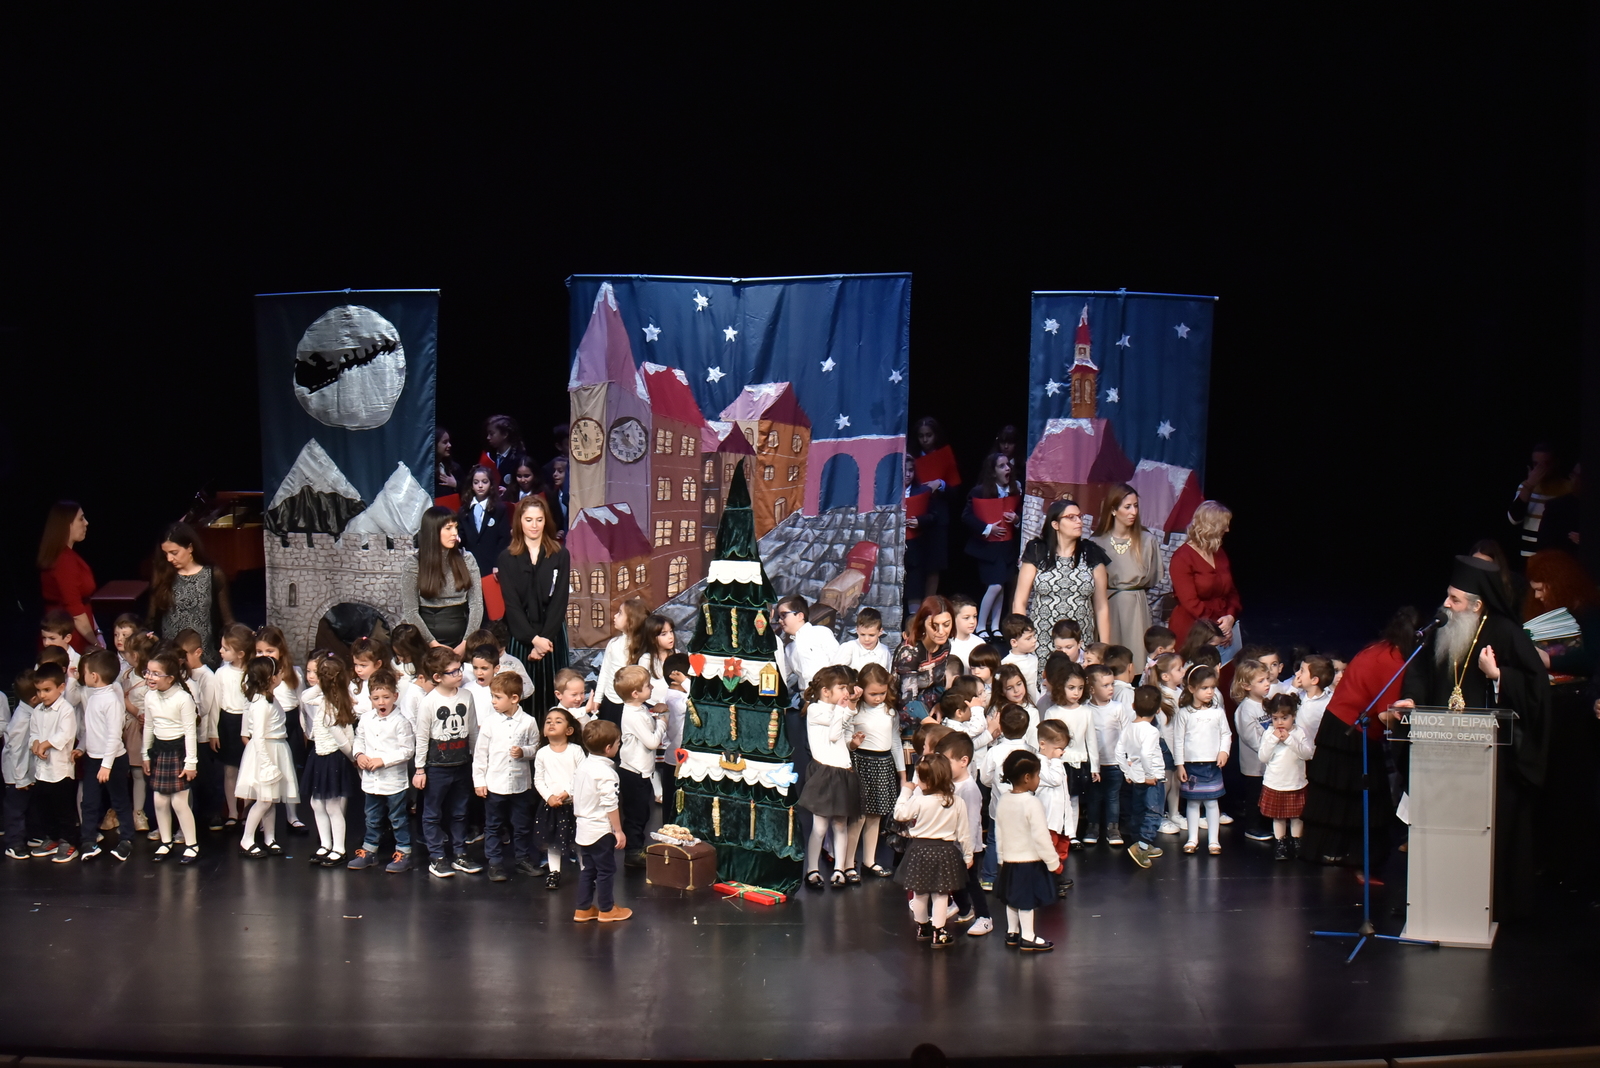 Με εξαιρετική επιτυχία η Χριστουγεννιάτικη Εκδήλωση του Παιδικού Σταθμού – Νηπιαγωγείου της Ι.Μ.Π. στο κατάμεστο Δημοτικό Θέατρο